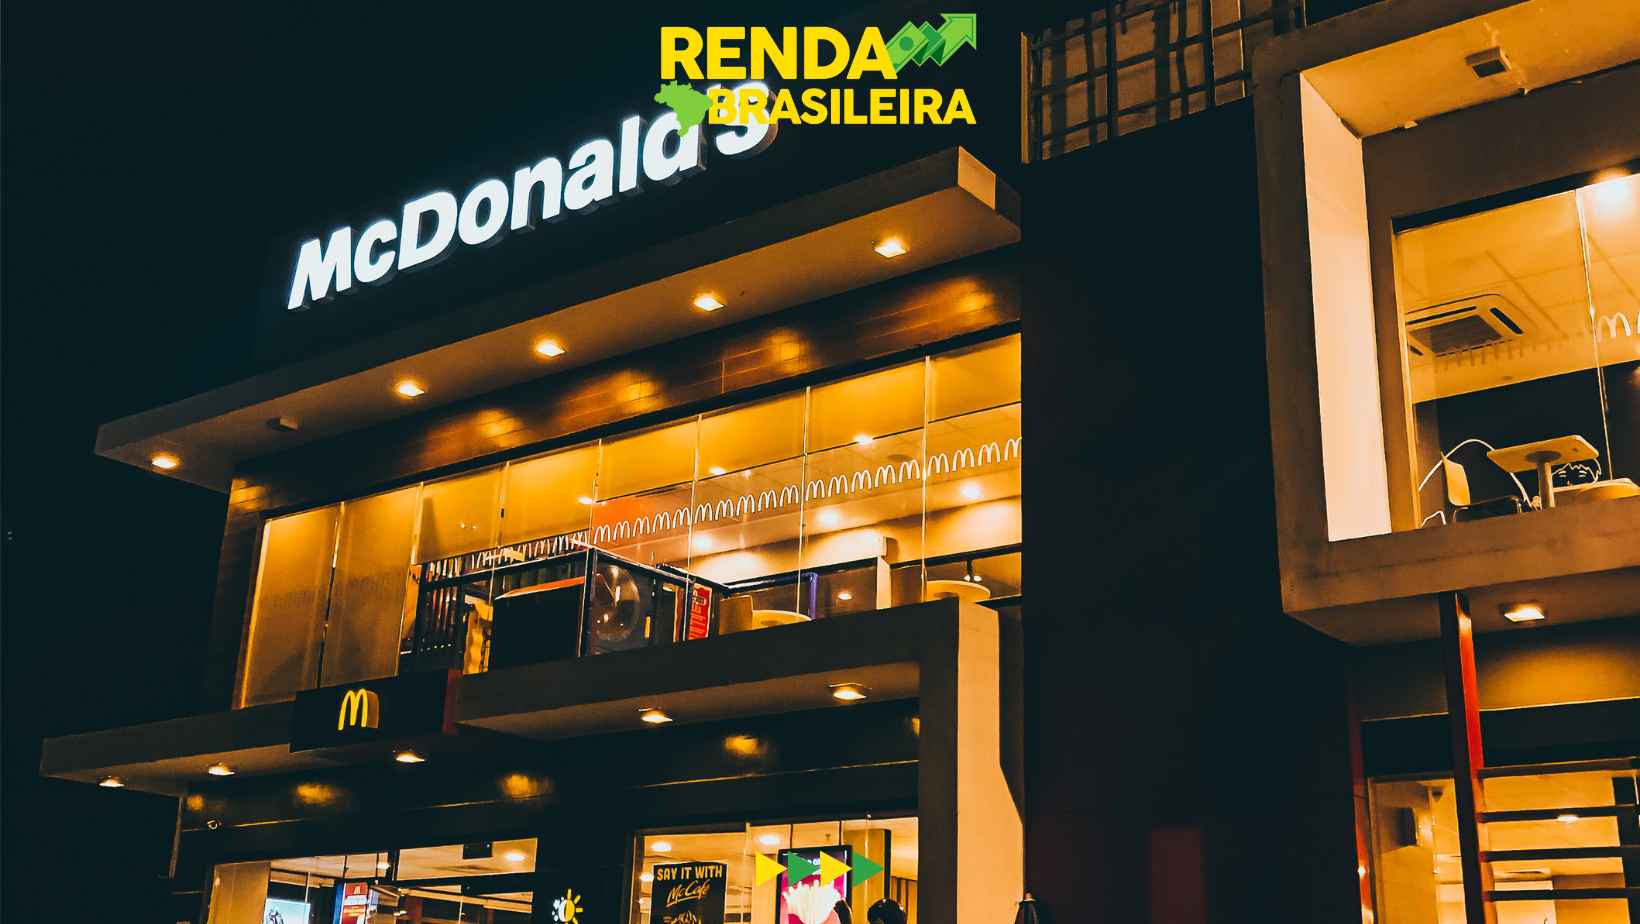 McDonald’s trabalhe conosco: onde se candidatar e quais as vagas?